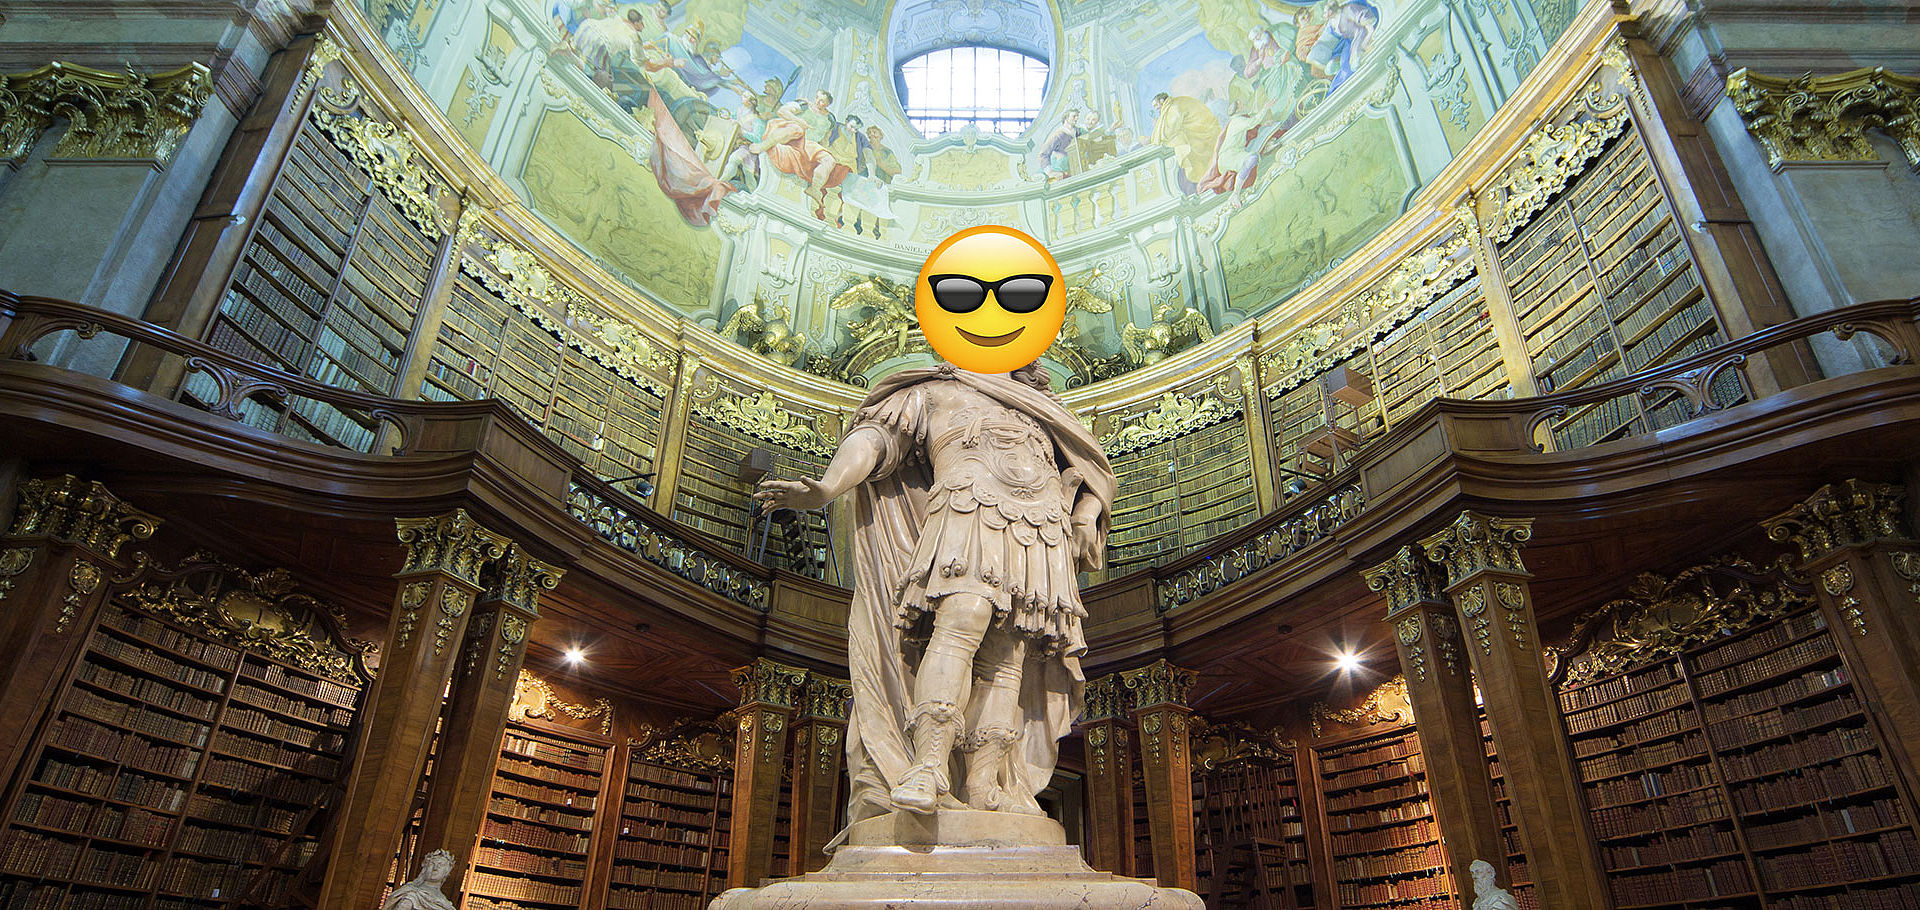 650 Jahre Österreichische Nationalbibliothek, Statue Karl IV mit Smiley-Emoji